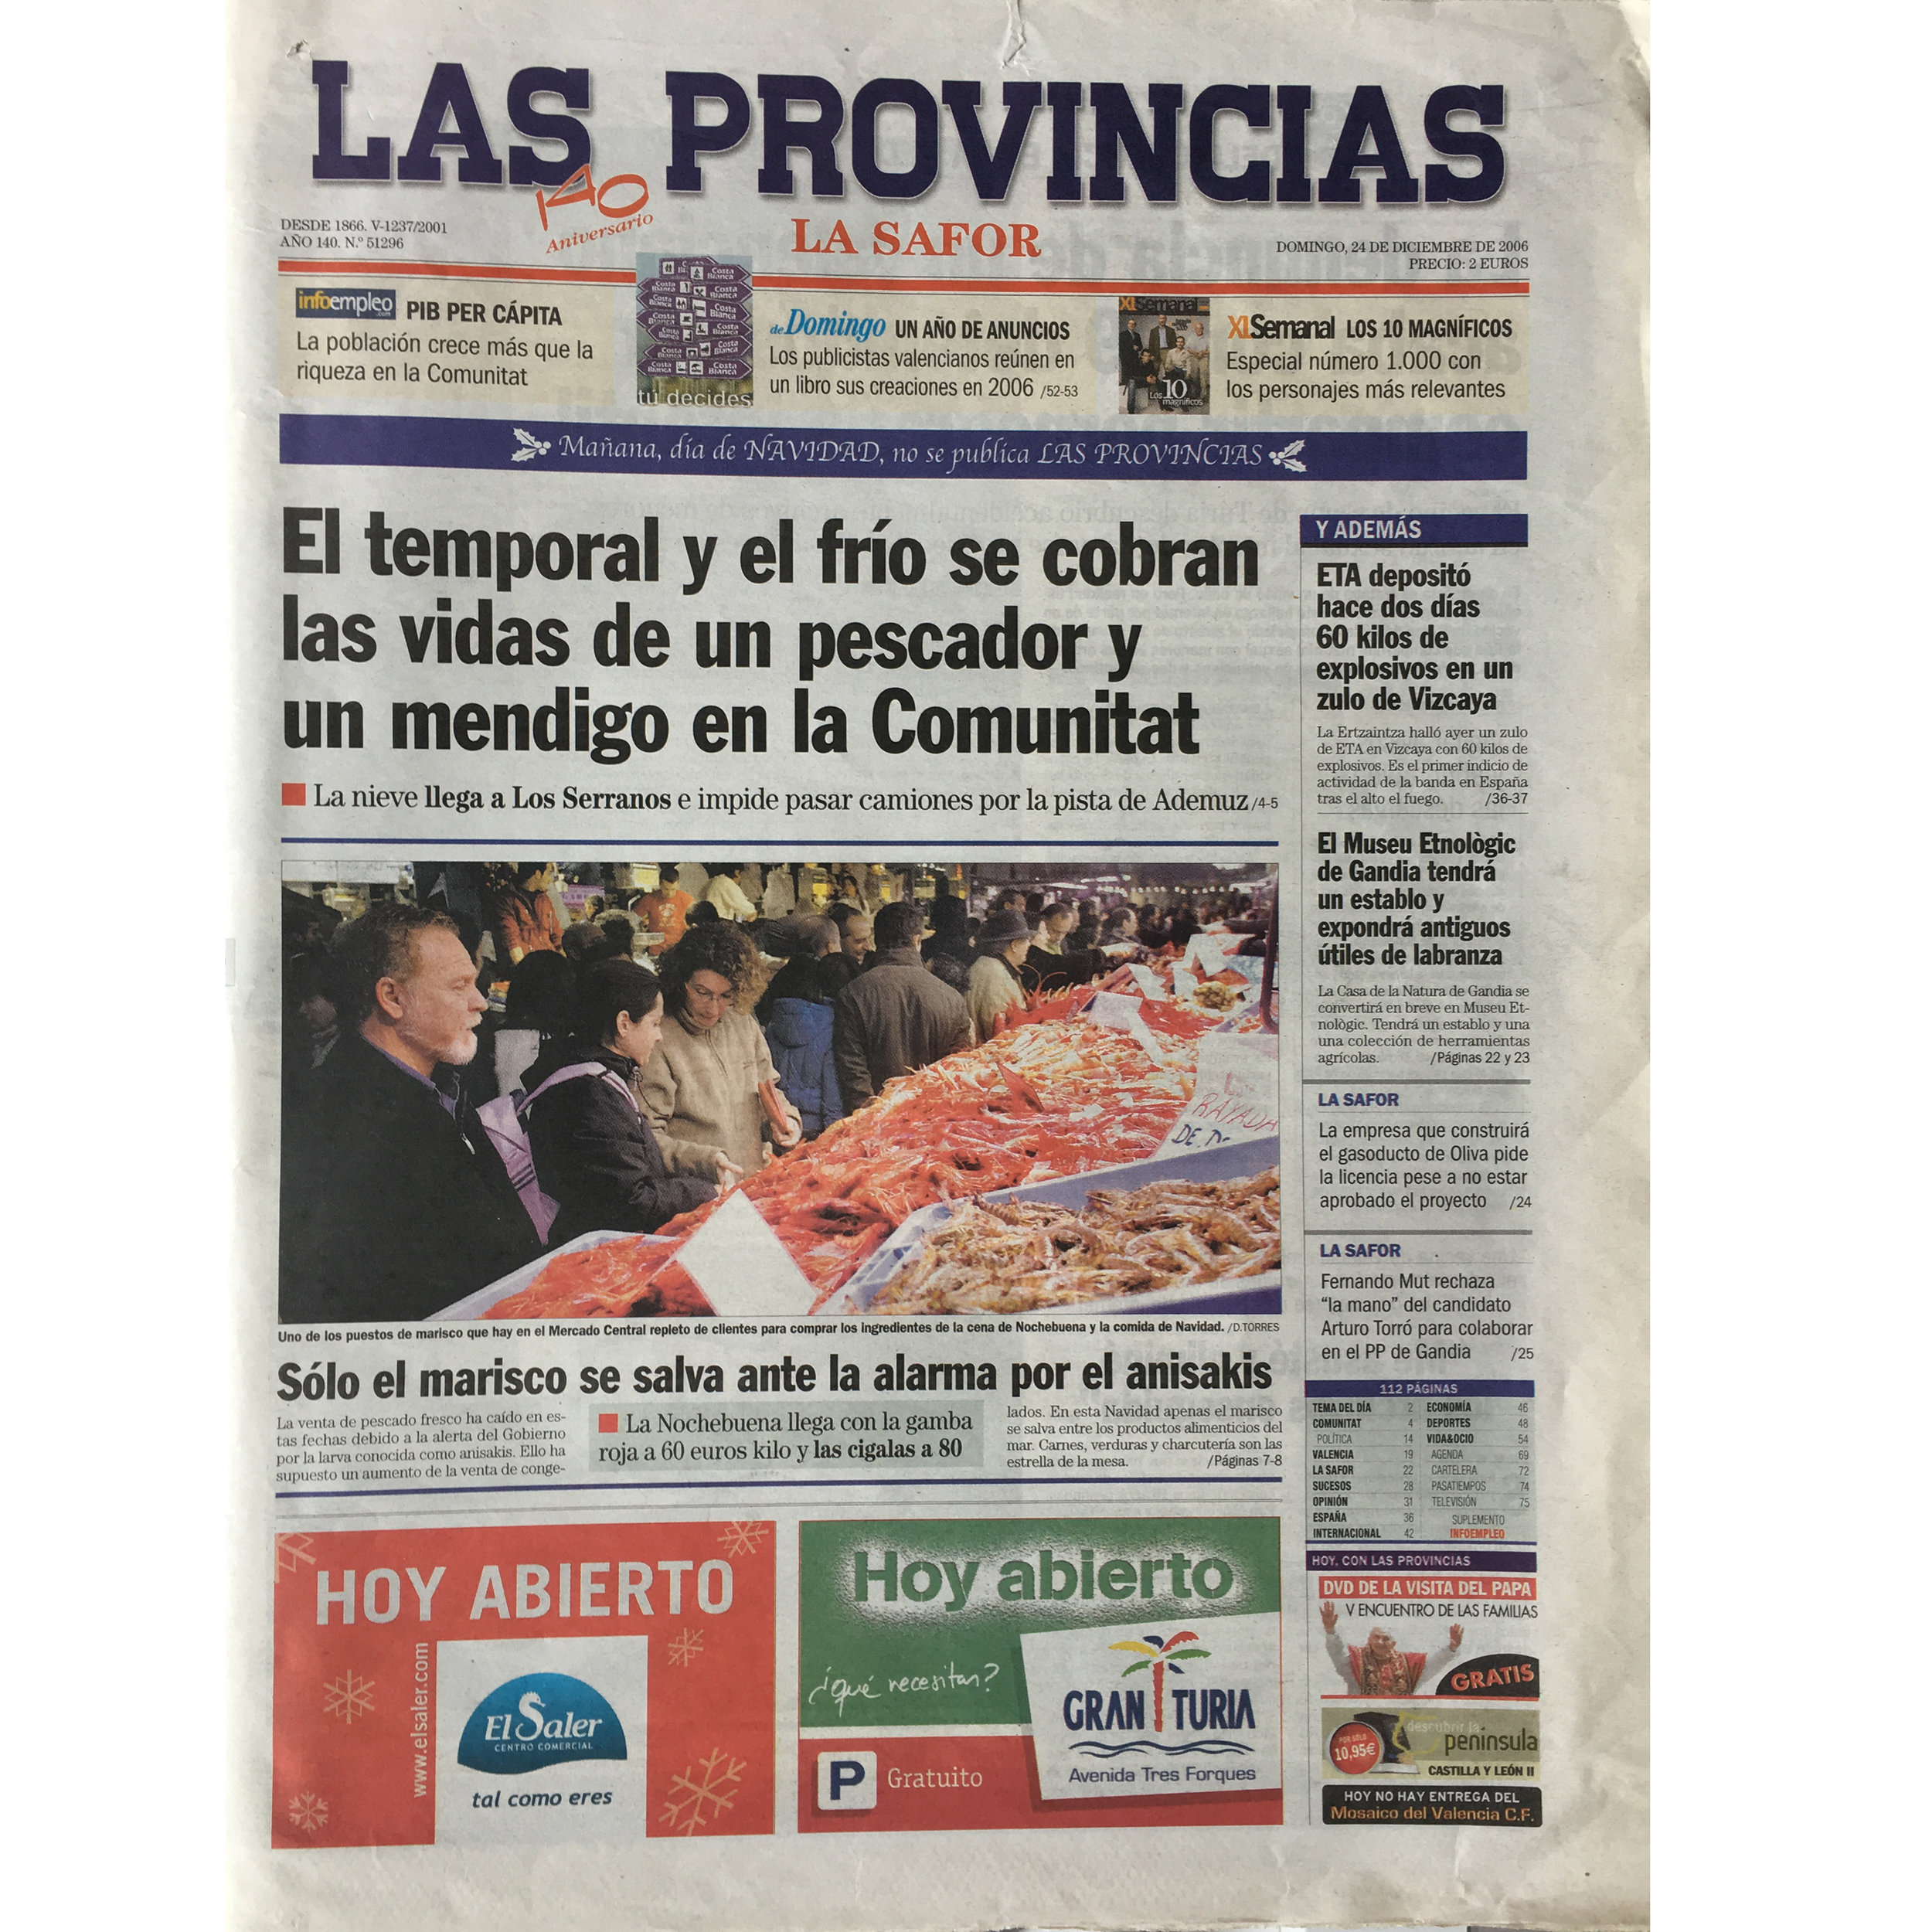 Las Provincias. 2006. (Printed publication)